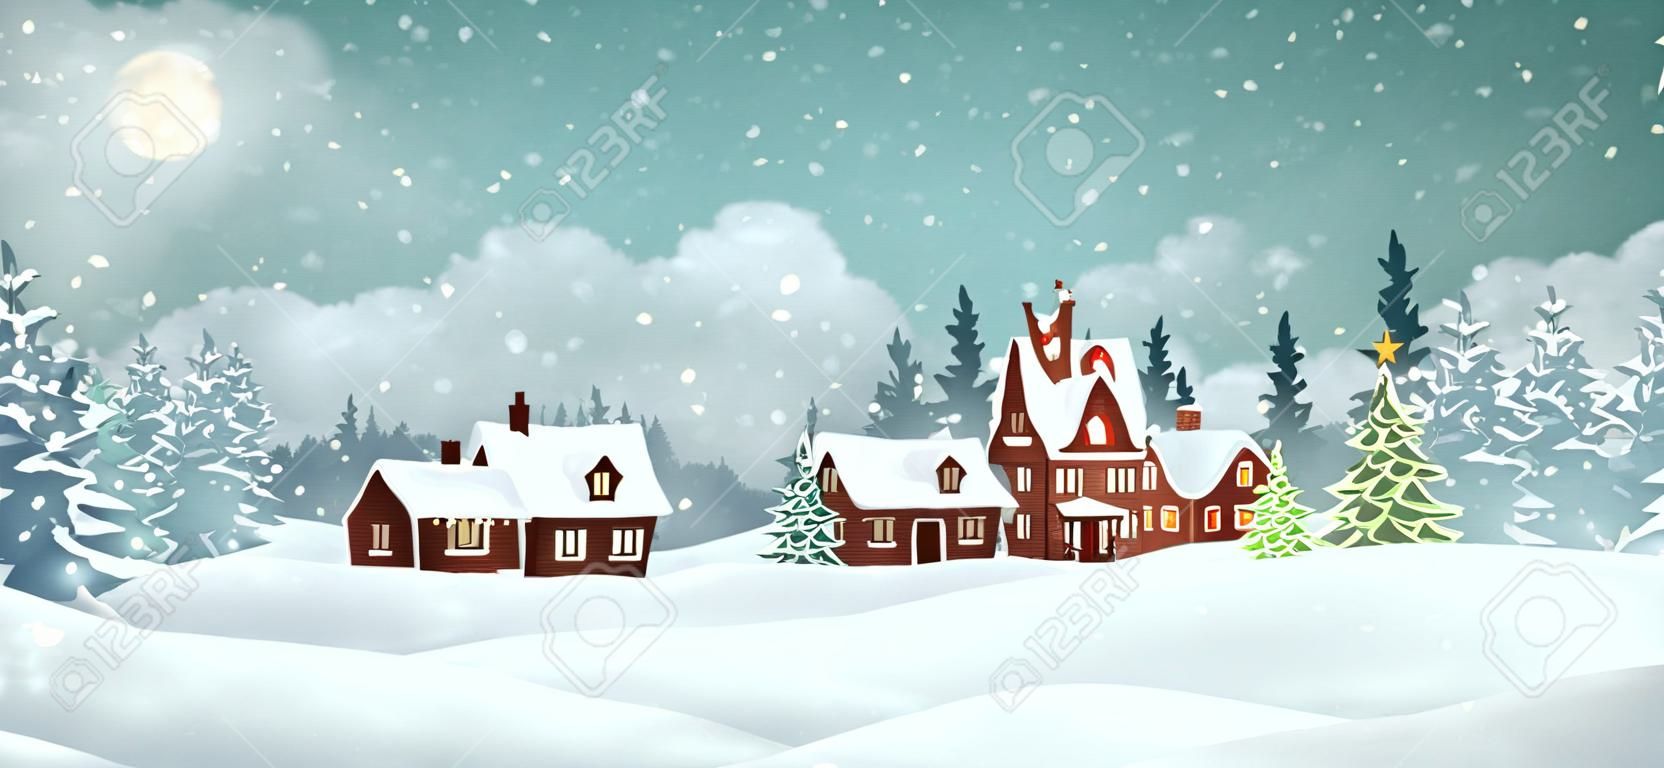 Casas de pueblo de Navidad con bosque de pinos de invierno. Ilustración de vector de vacaciones de Navidad